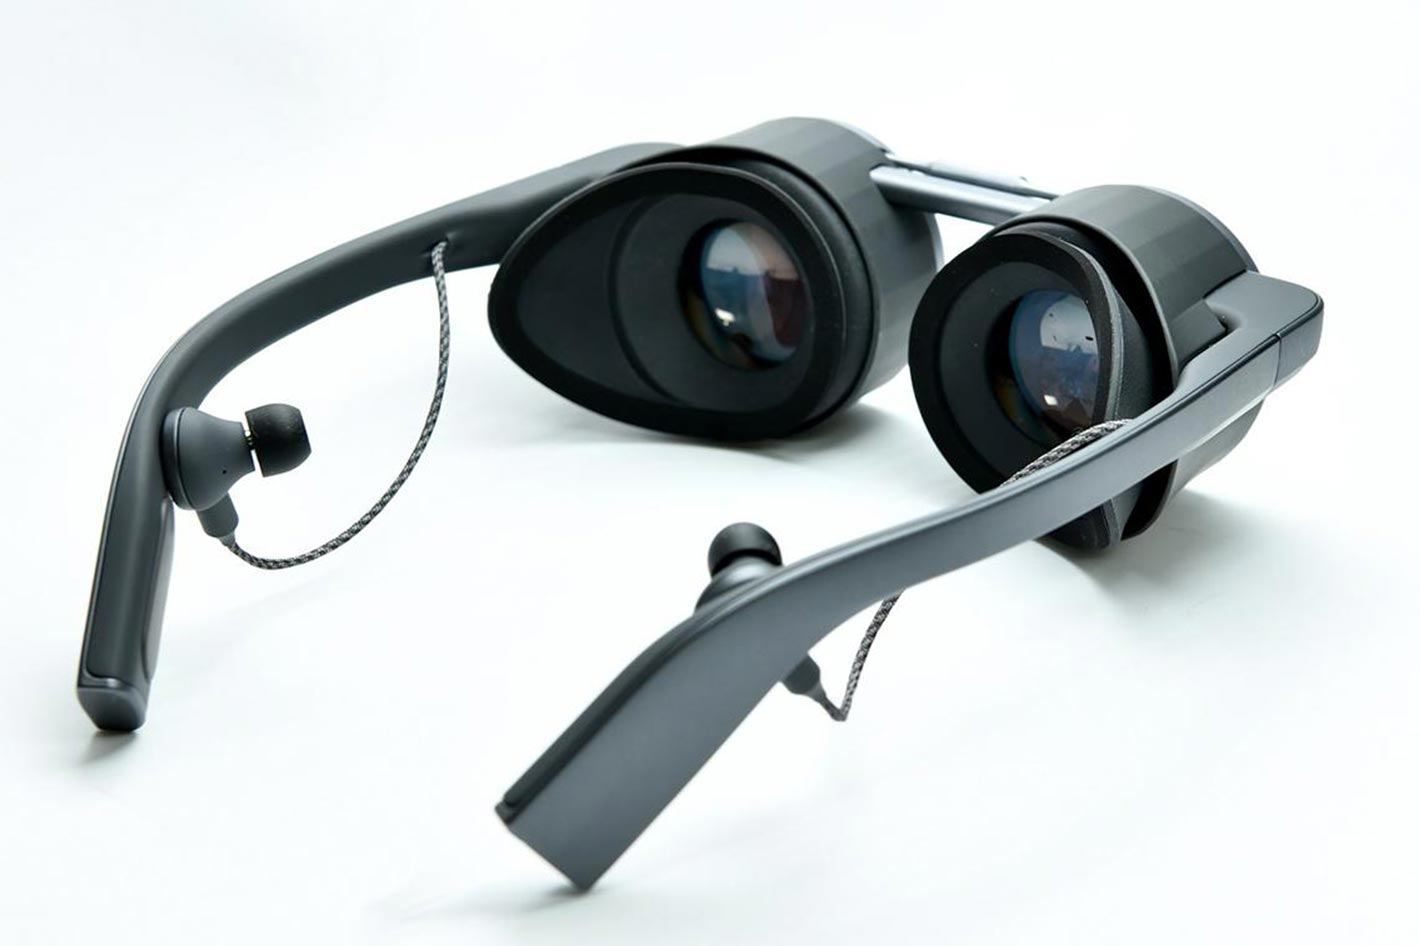 Panasonic’s VR Glasses return for CES 2021